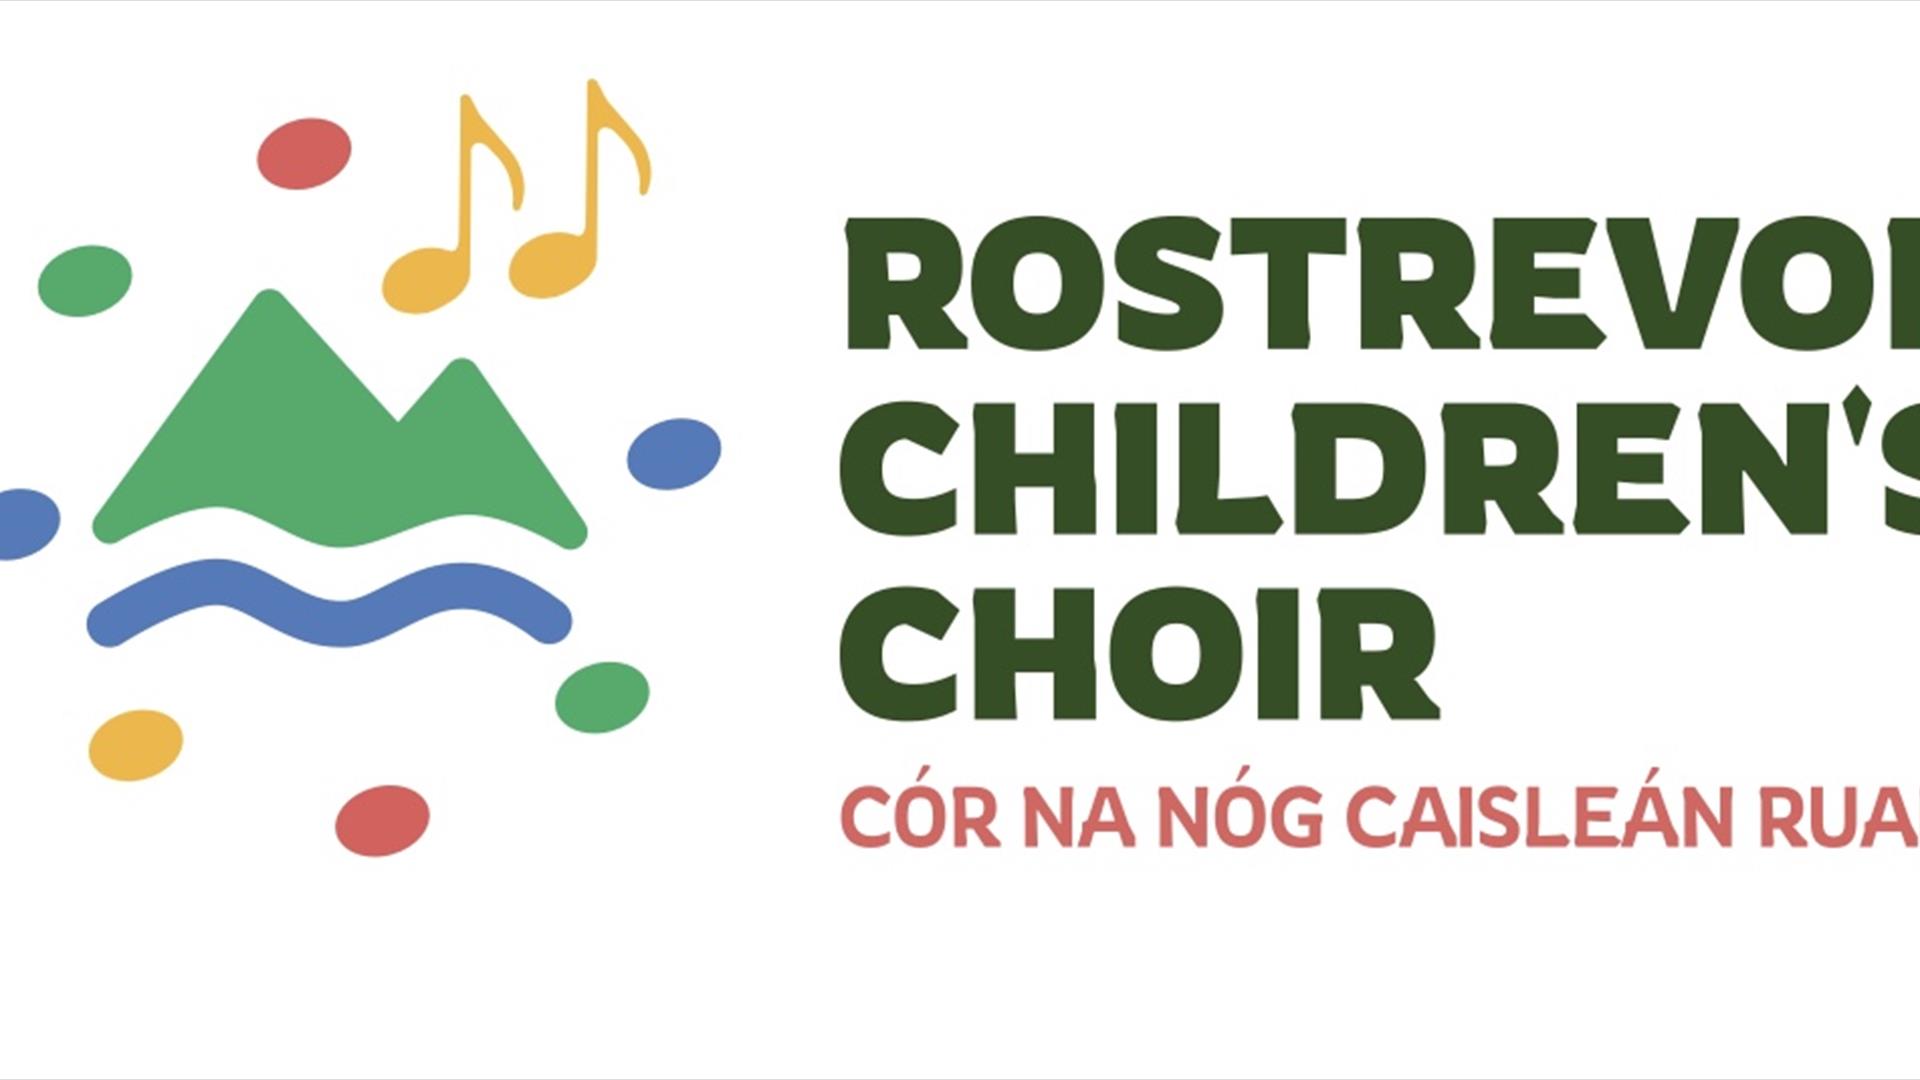 Rostrevor Children's Choir